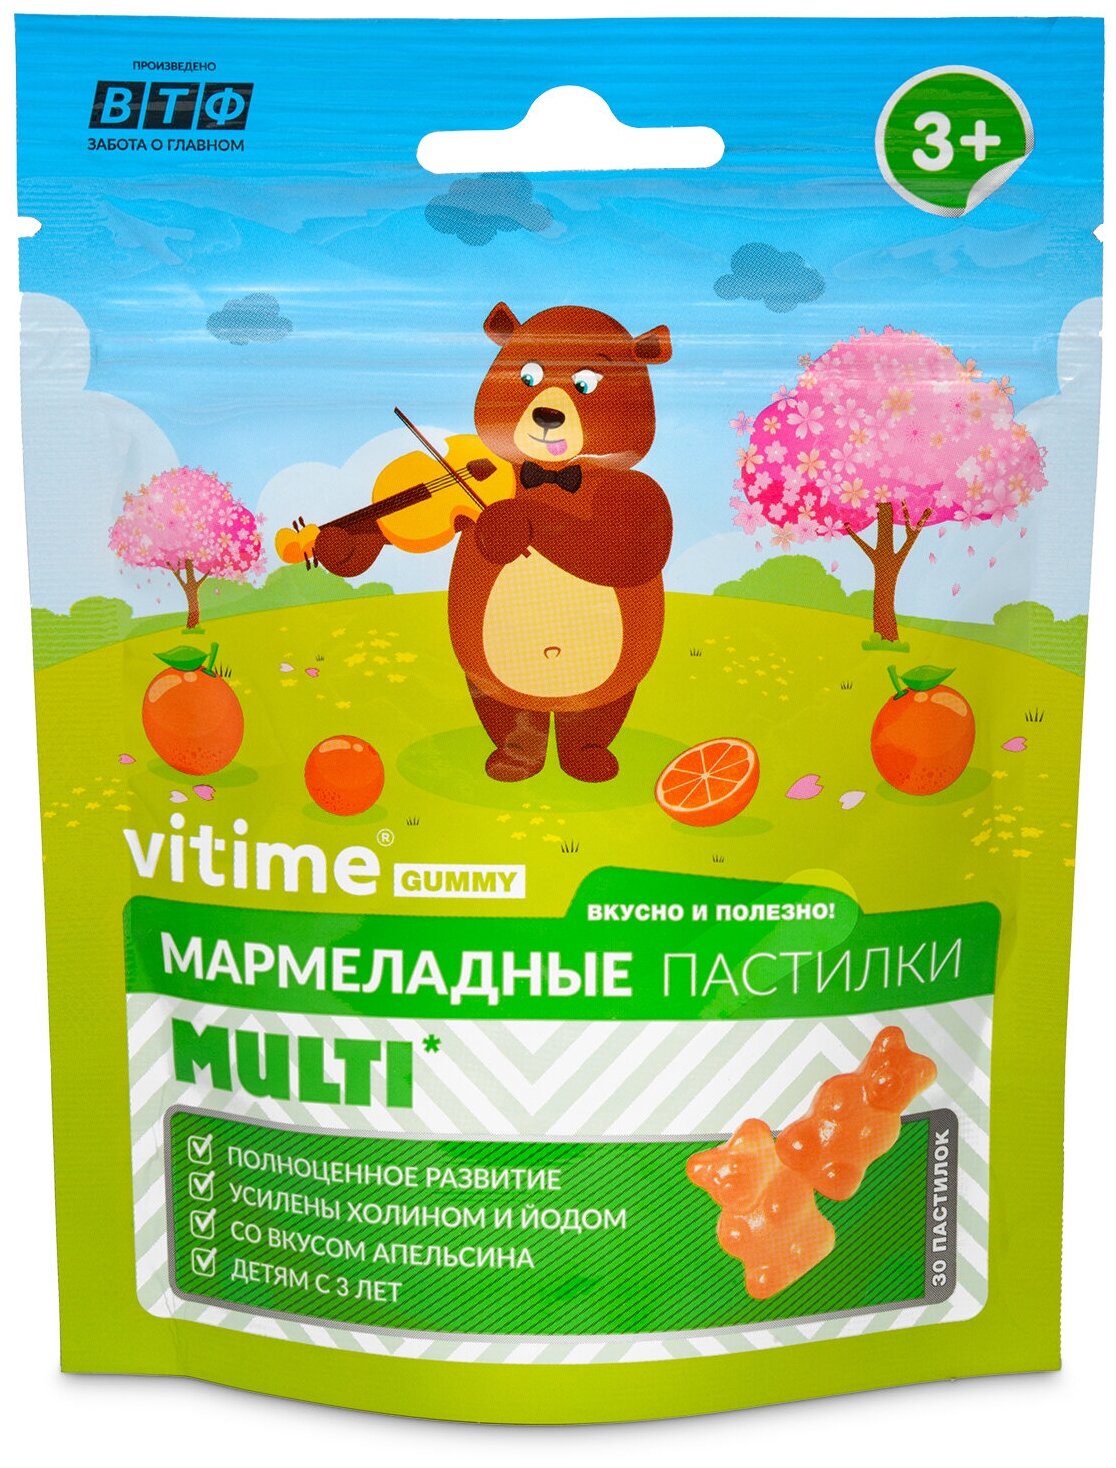 VITime Мультивитамины для детей мармеладные пастилки, 90 г, 30 шт., апельсин